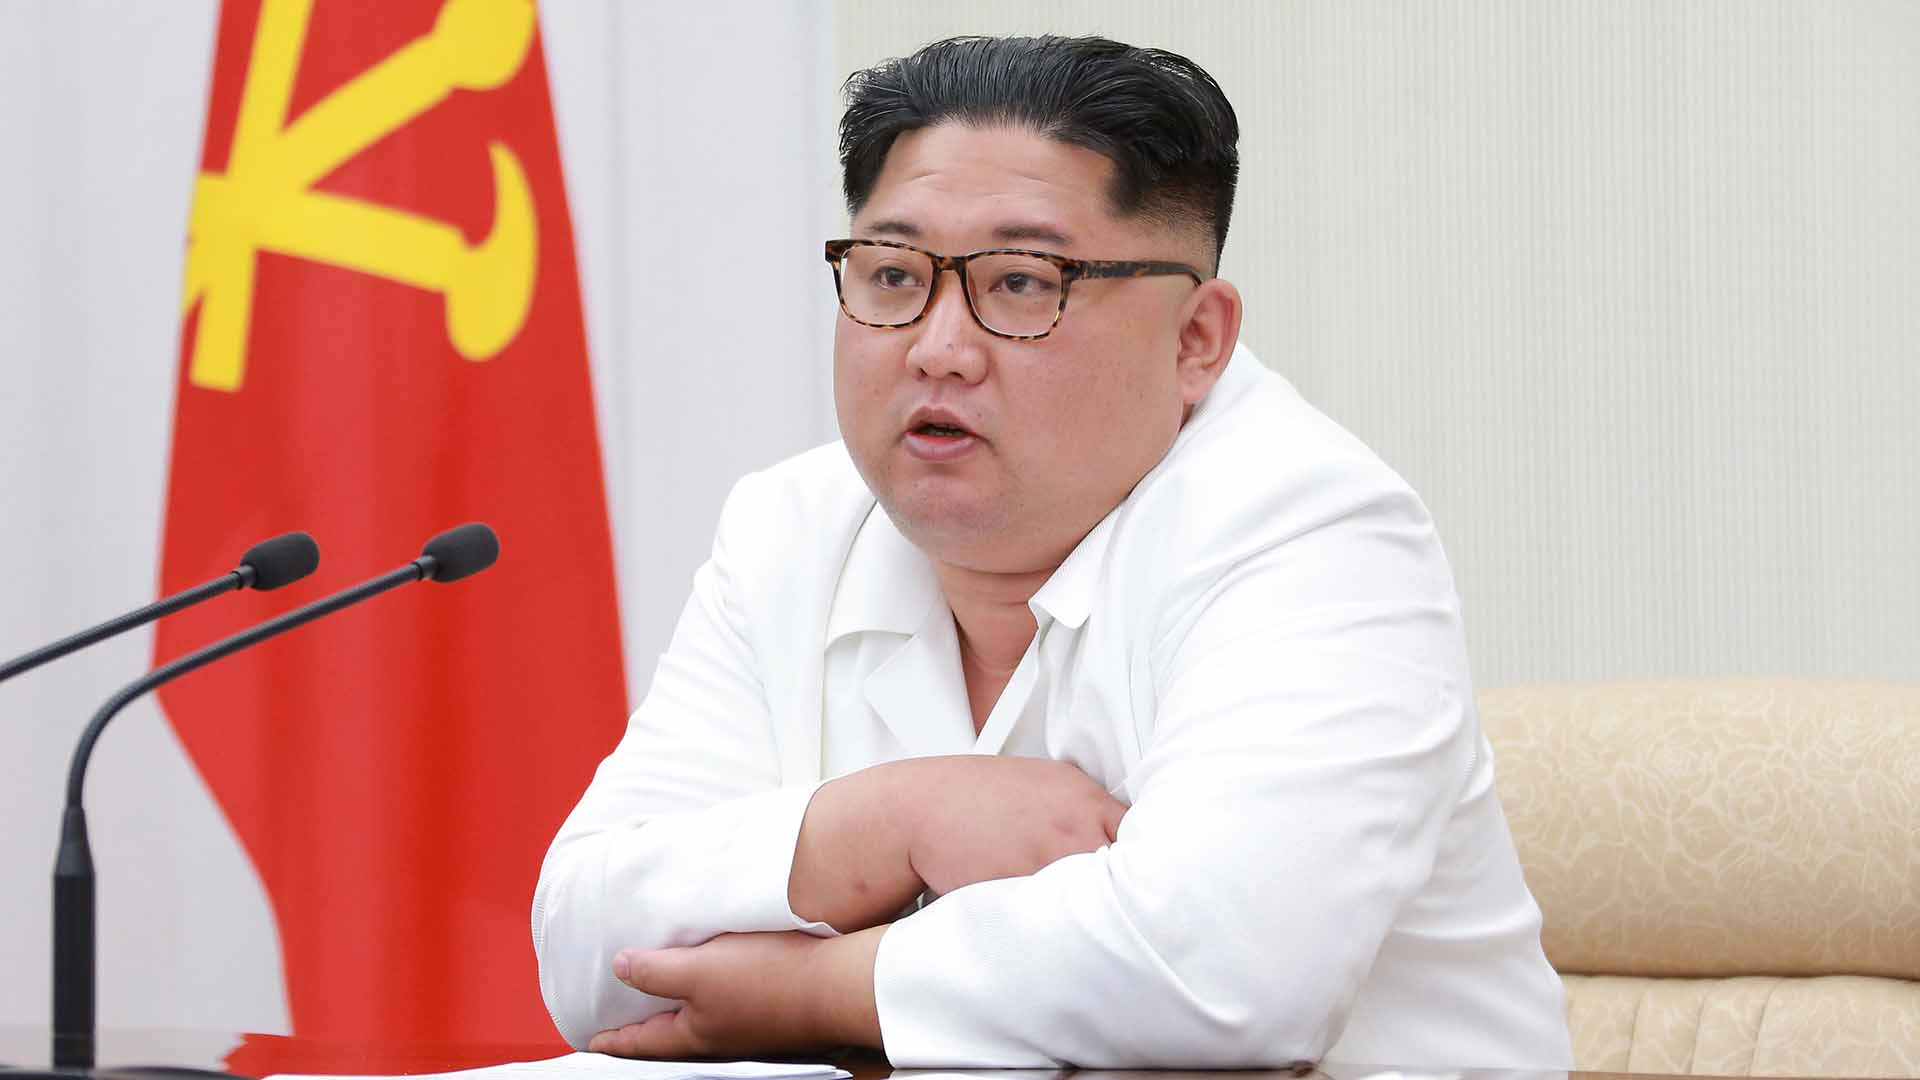 El régimen de Pyongyang, dispuesto a dialogar con Washington pese a cancelarse la cumbre